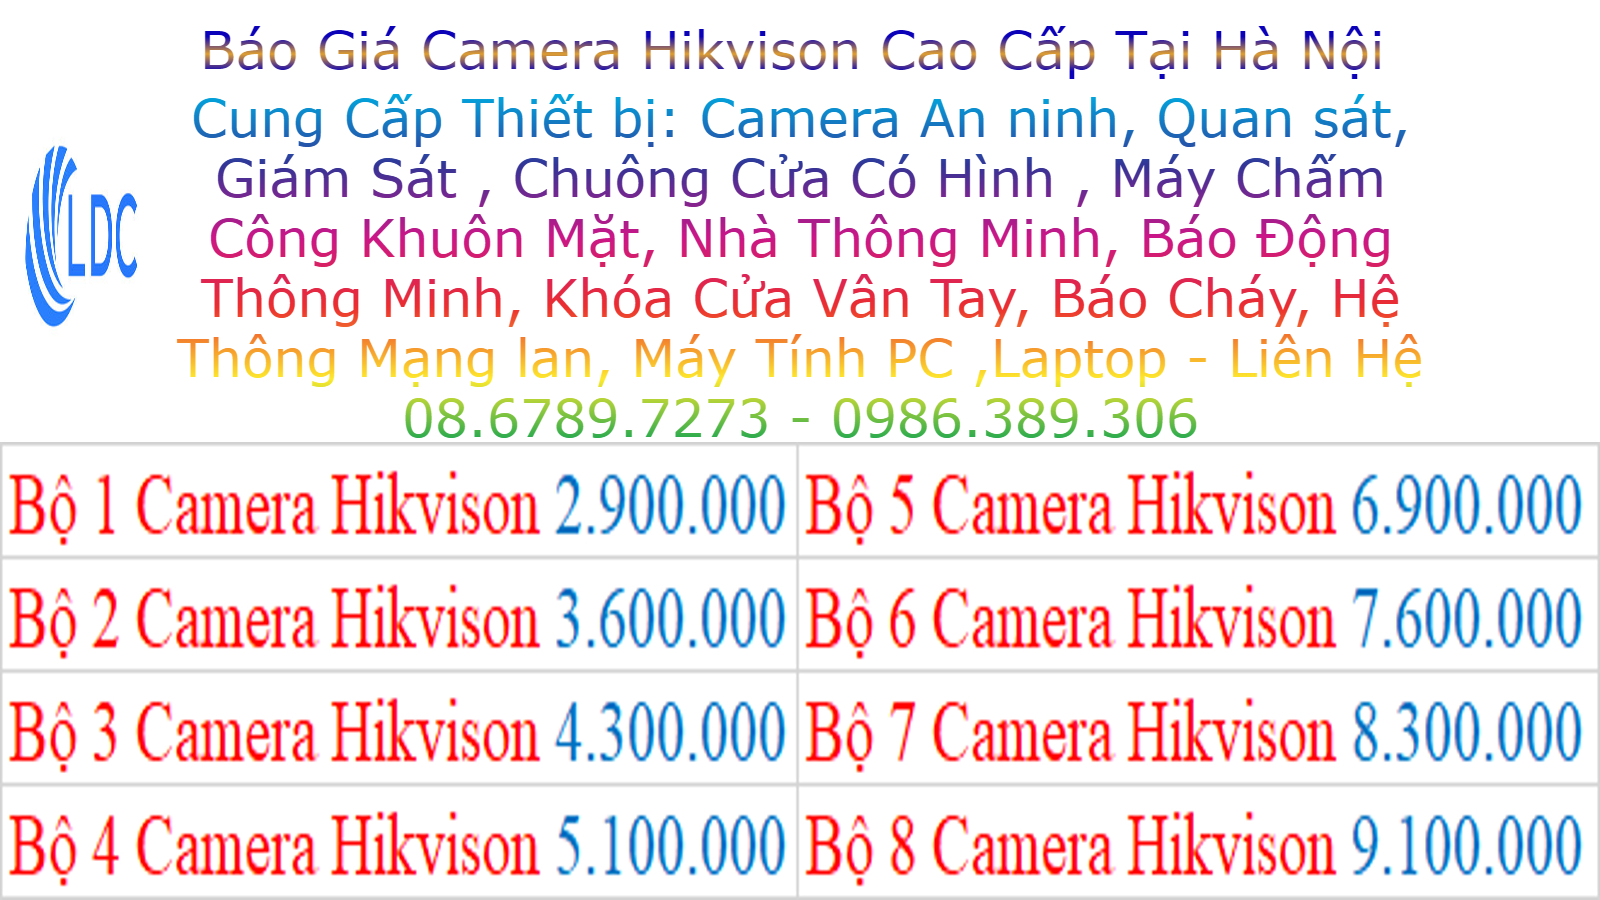 Lắp Đặt Camera Hikvision Tại Định Công Hoàng Mai Camera Sắc Nét Giá Rẻ